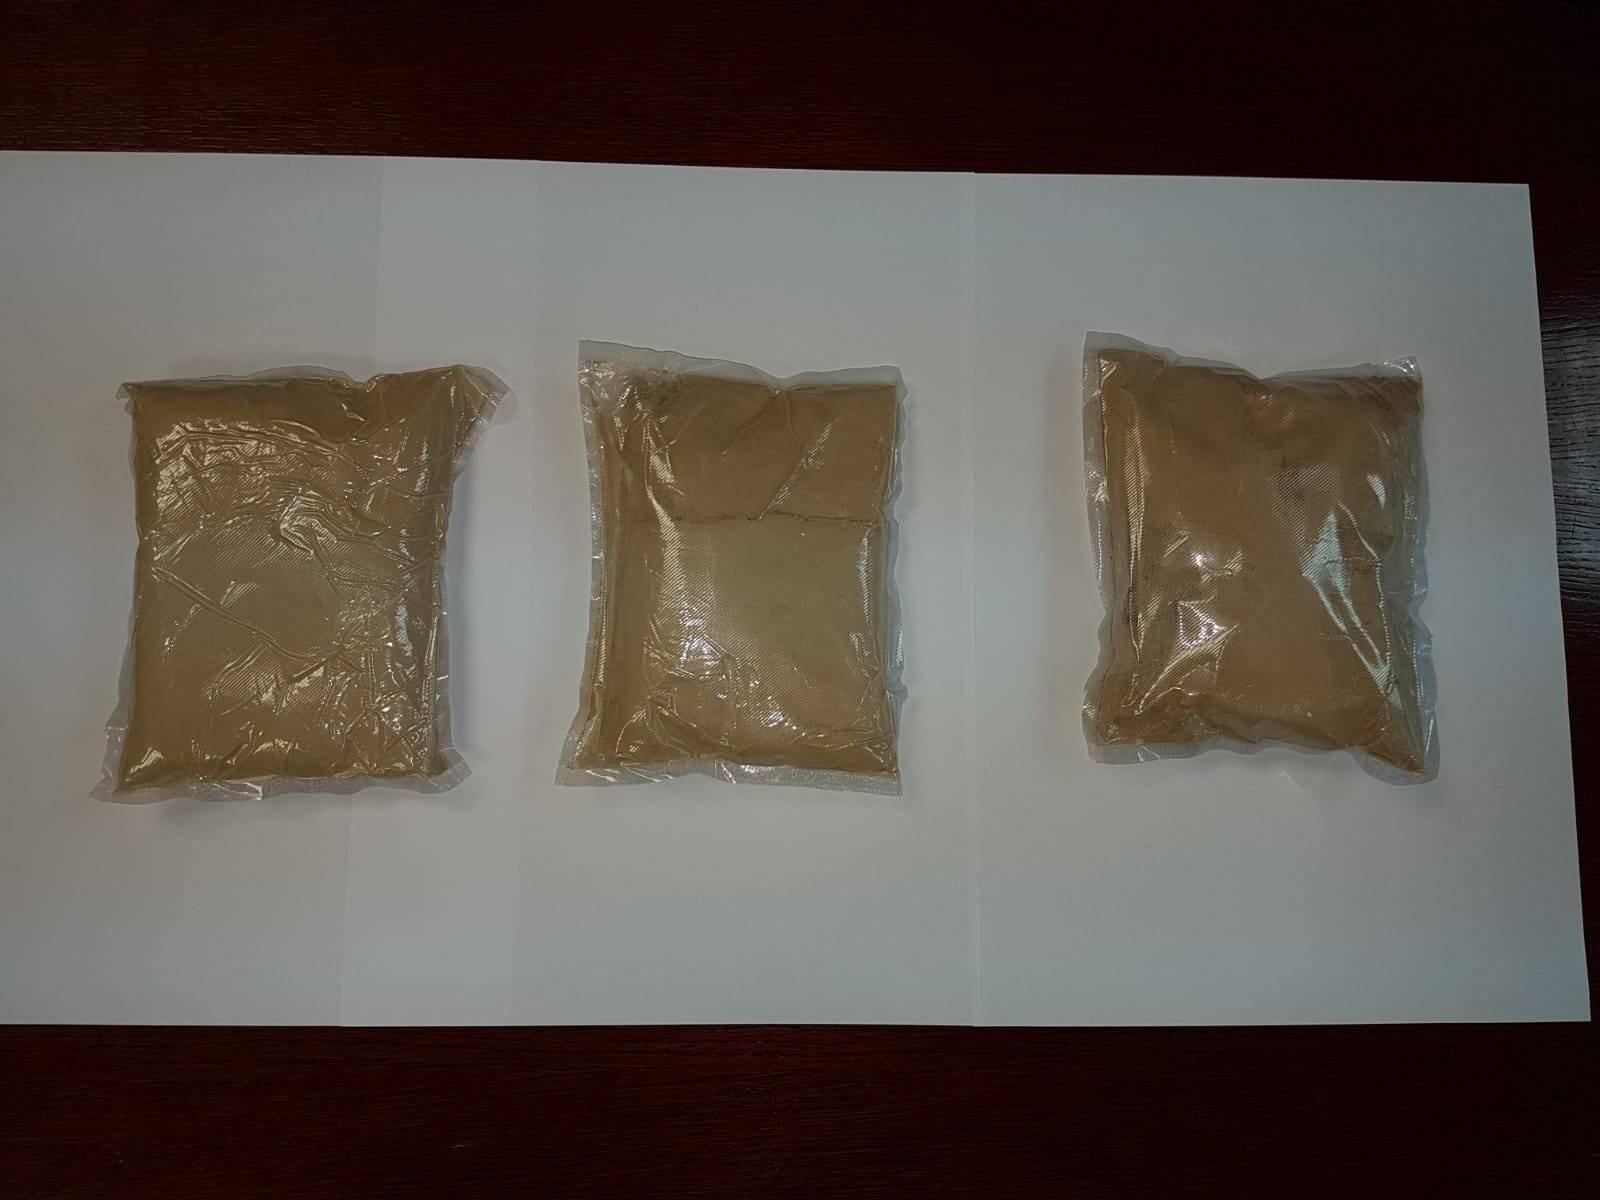 Muškarac i žena švercali 1,5 kg heroina: Vrijedan 600.000 kn